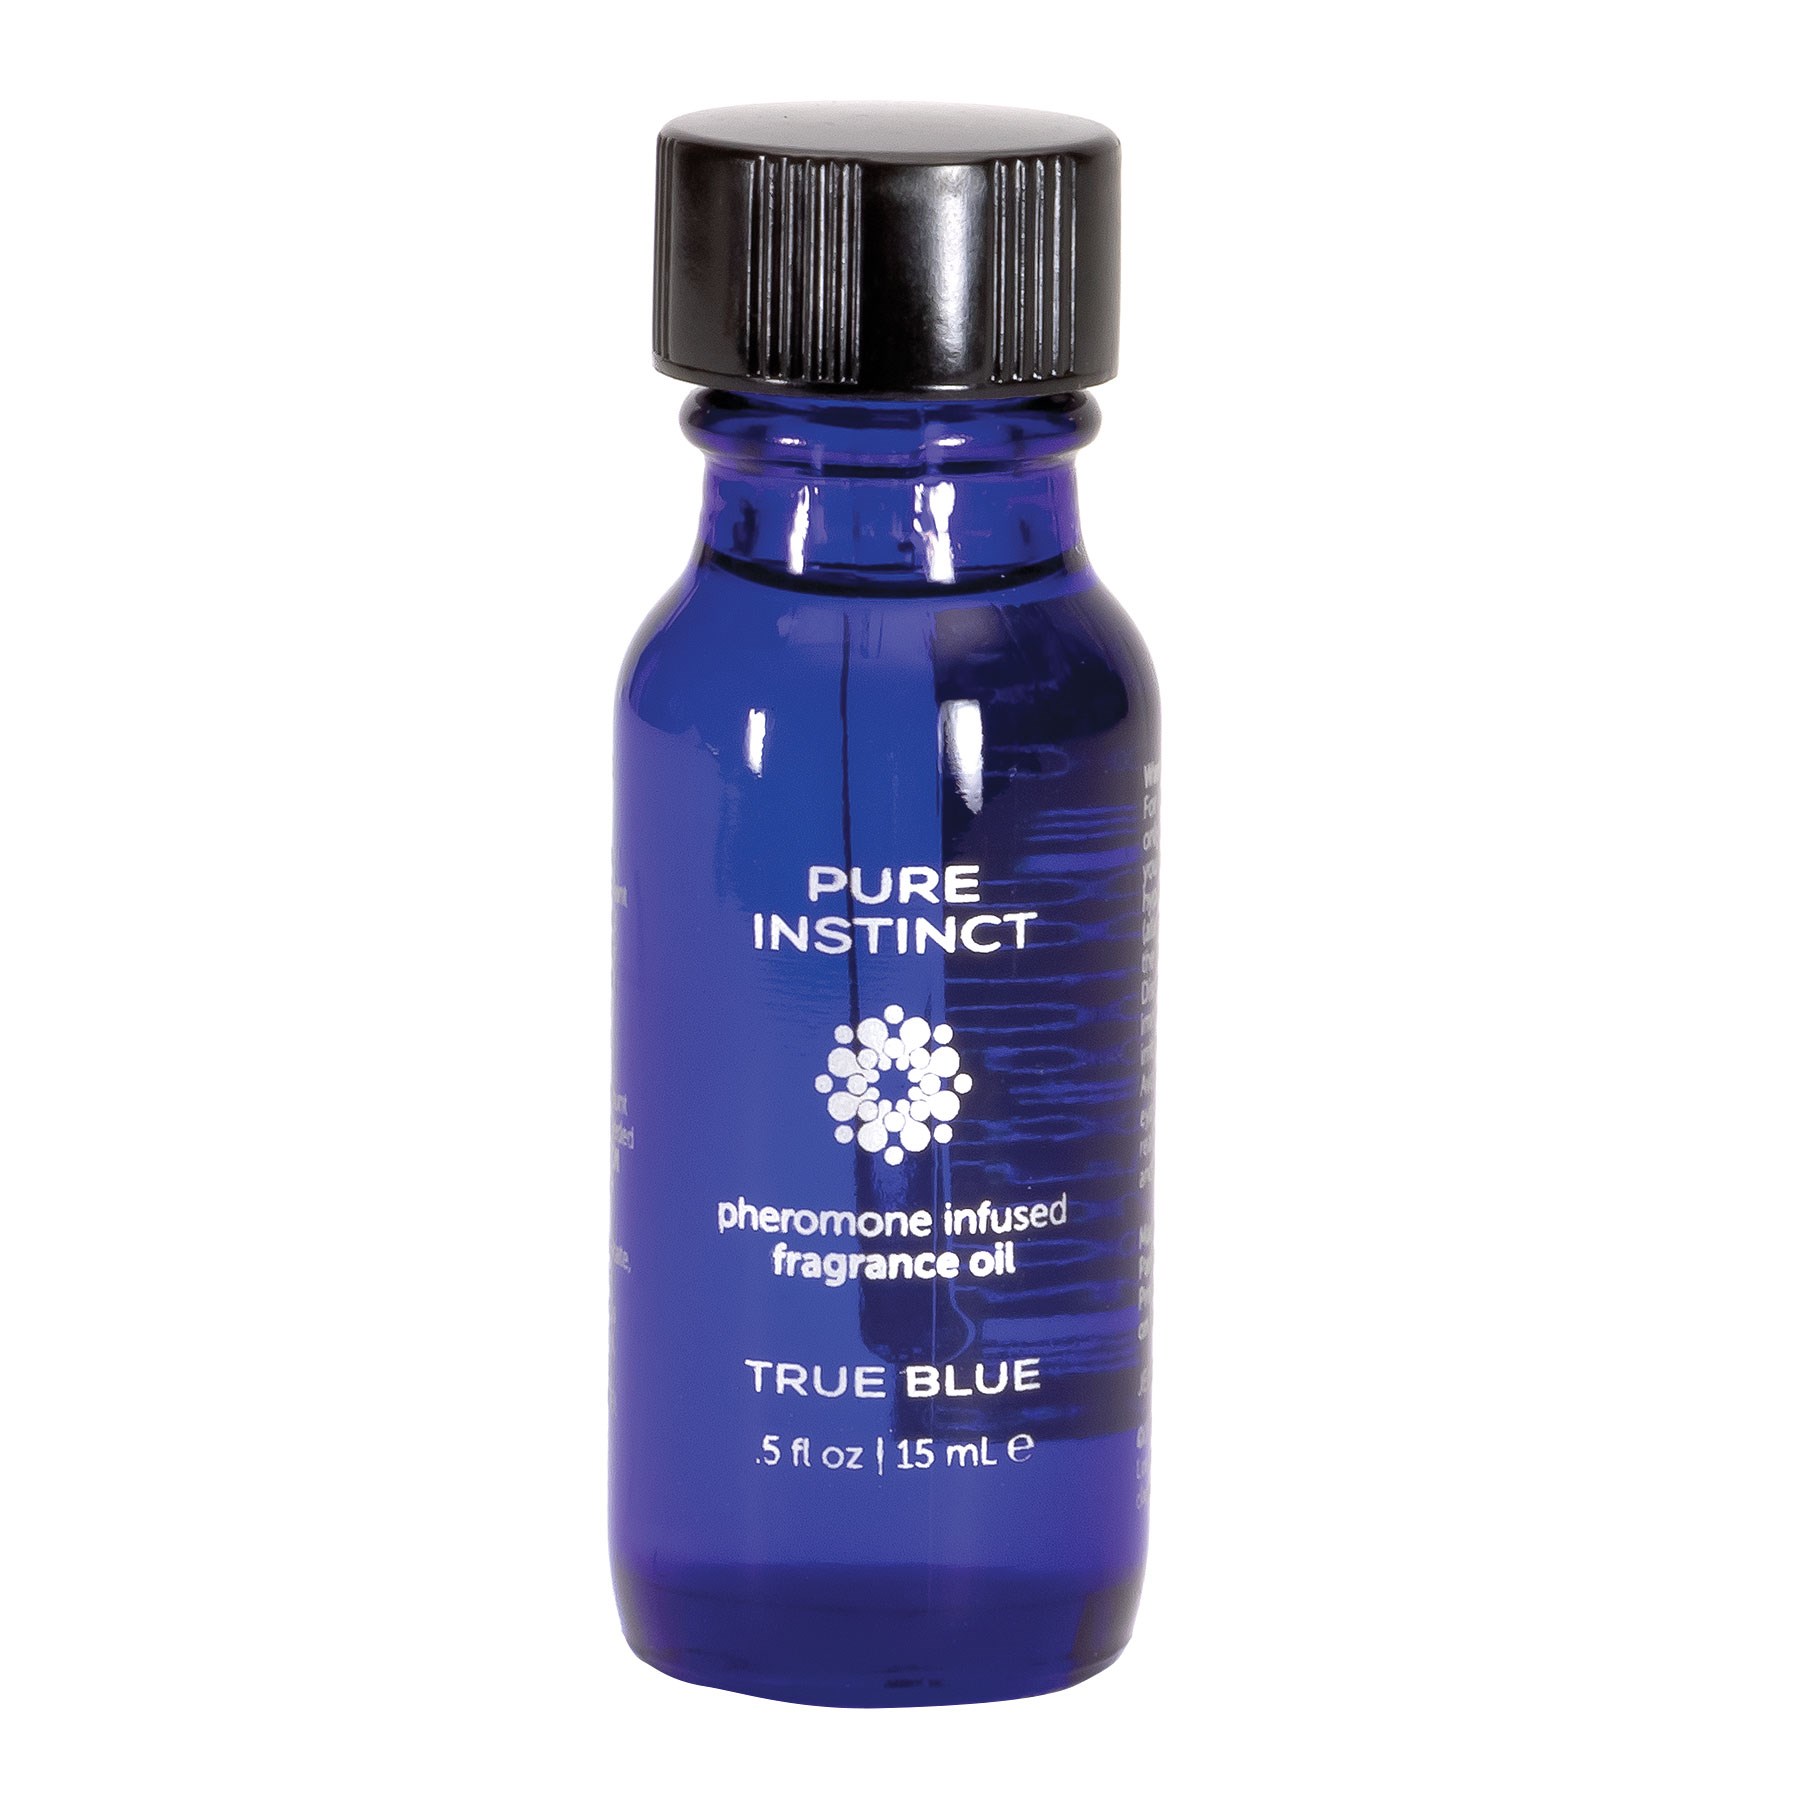 Pure Instinct Pheromone Fragrance Oil bottle